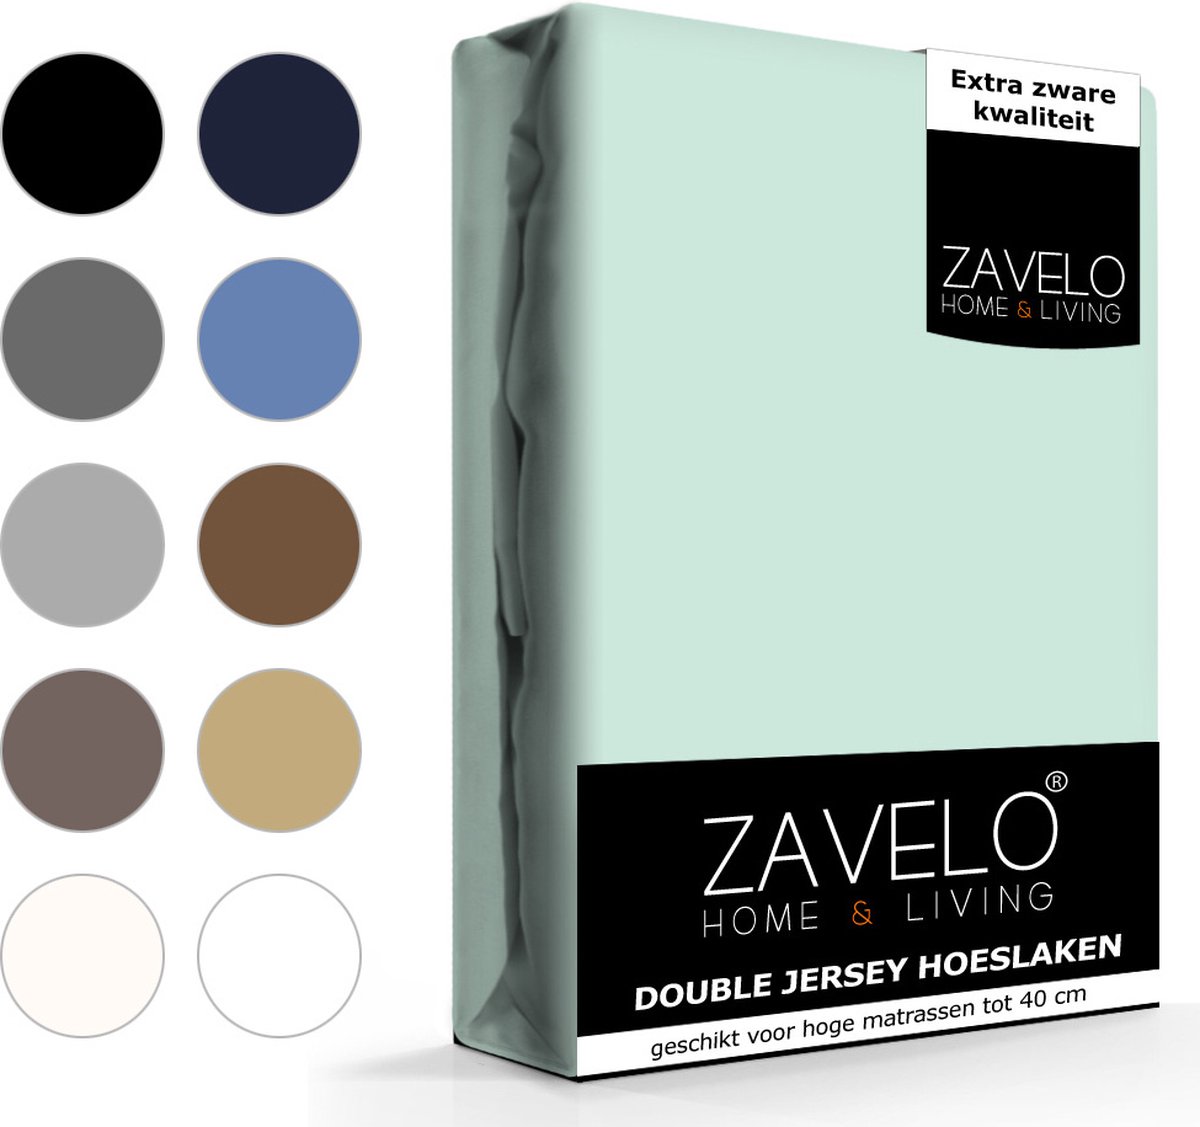 Slaaptextiel Zavelo Double Jersey Hoeslaken Pastel-lits-jumeaux (180x220 Cm) - Blauw